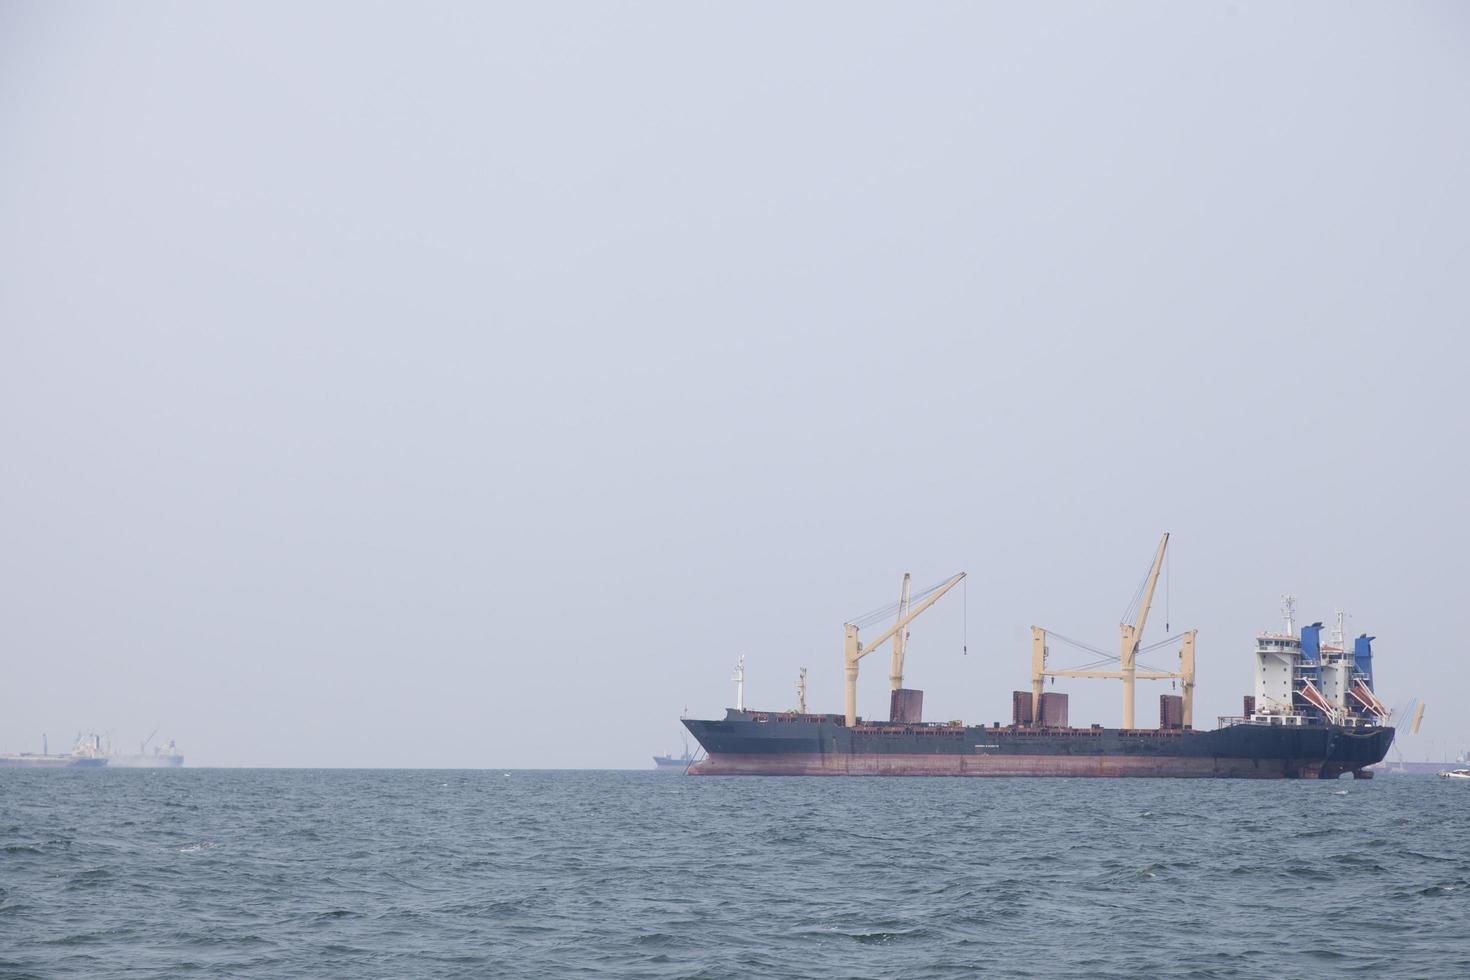 grande navio de carga no mar foto